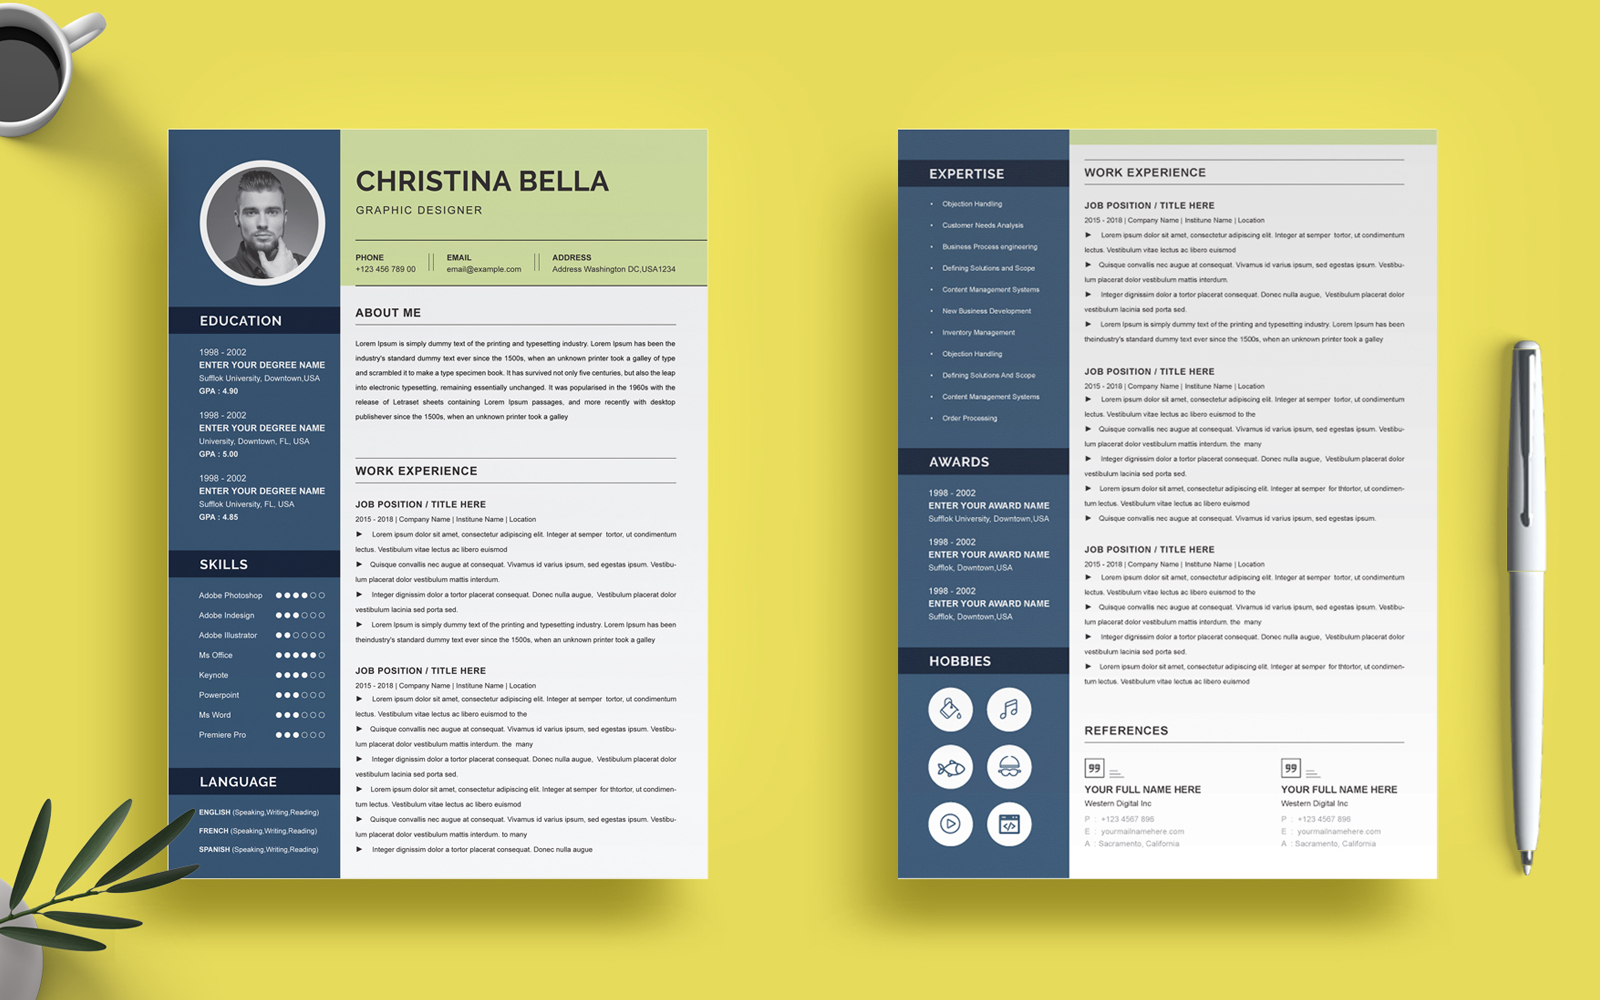 Christina Bella - Graphic Designer Resume